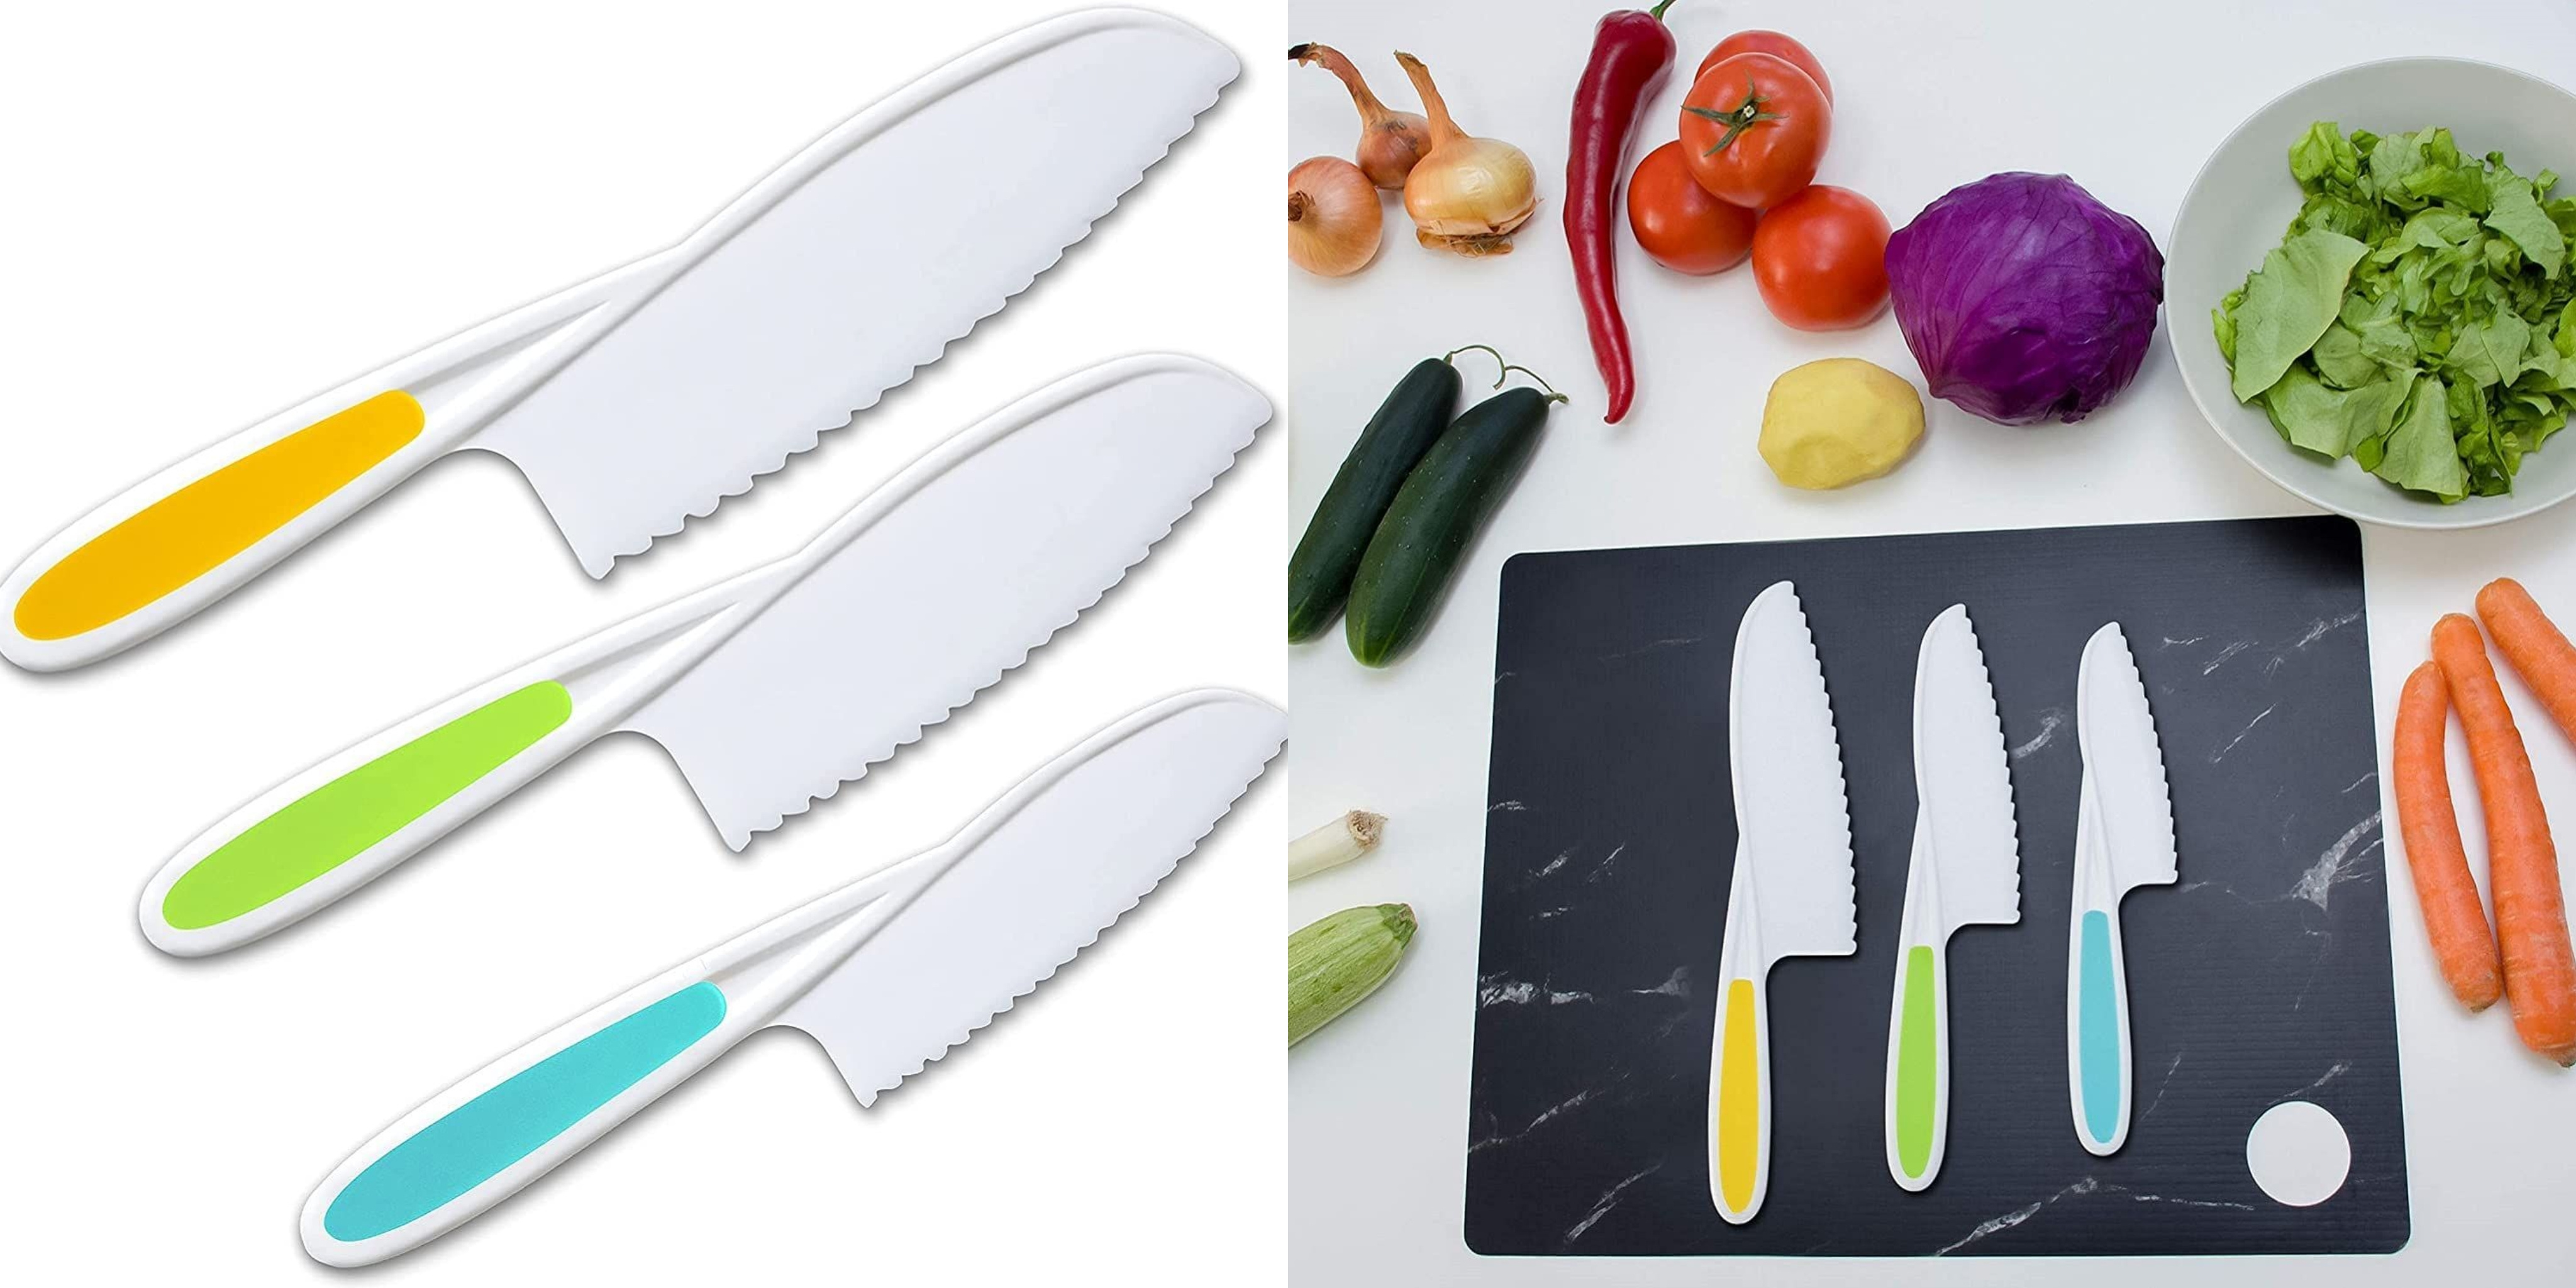 RISICULIS Juegos de cocina de madera para niños, el juego de cuchillos para  niños incluye cuchillo seguro de madera para niños, bordes dentados